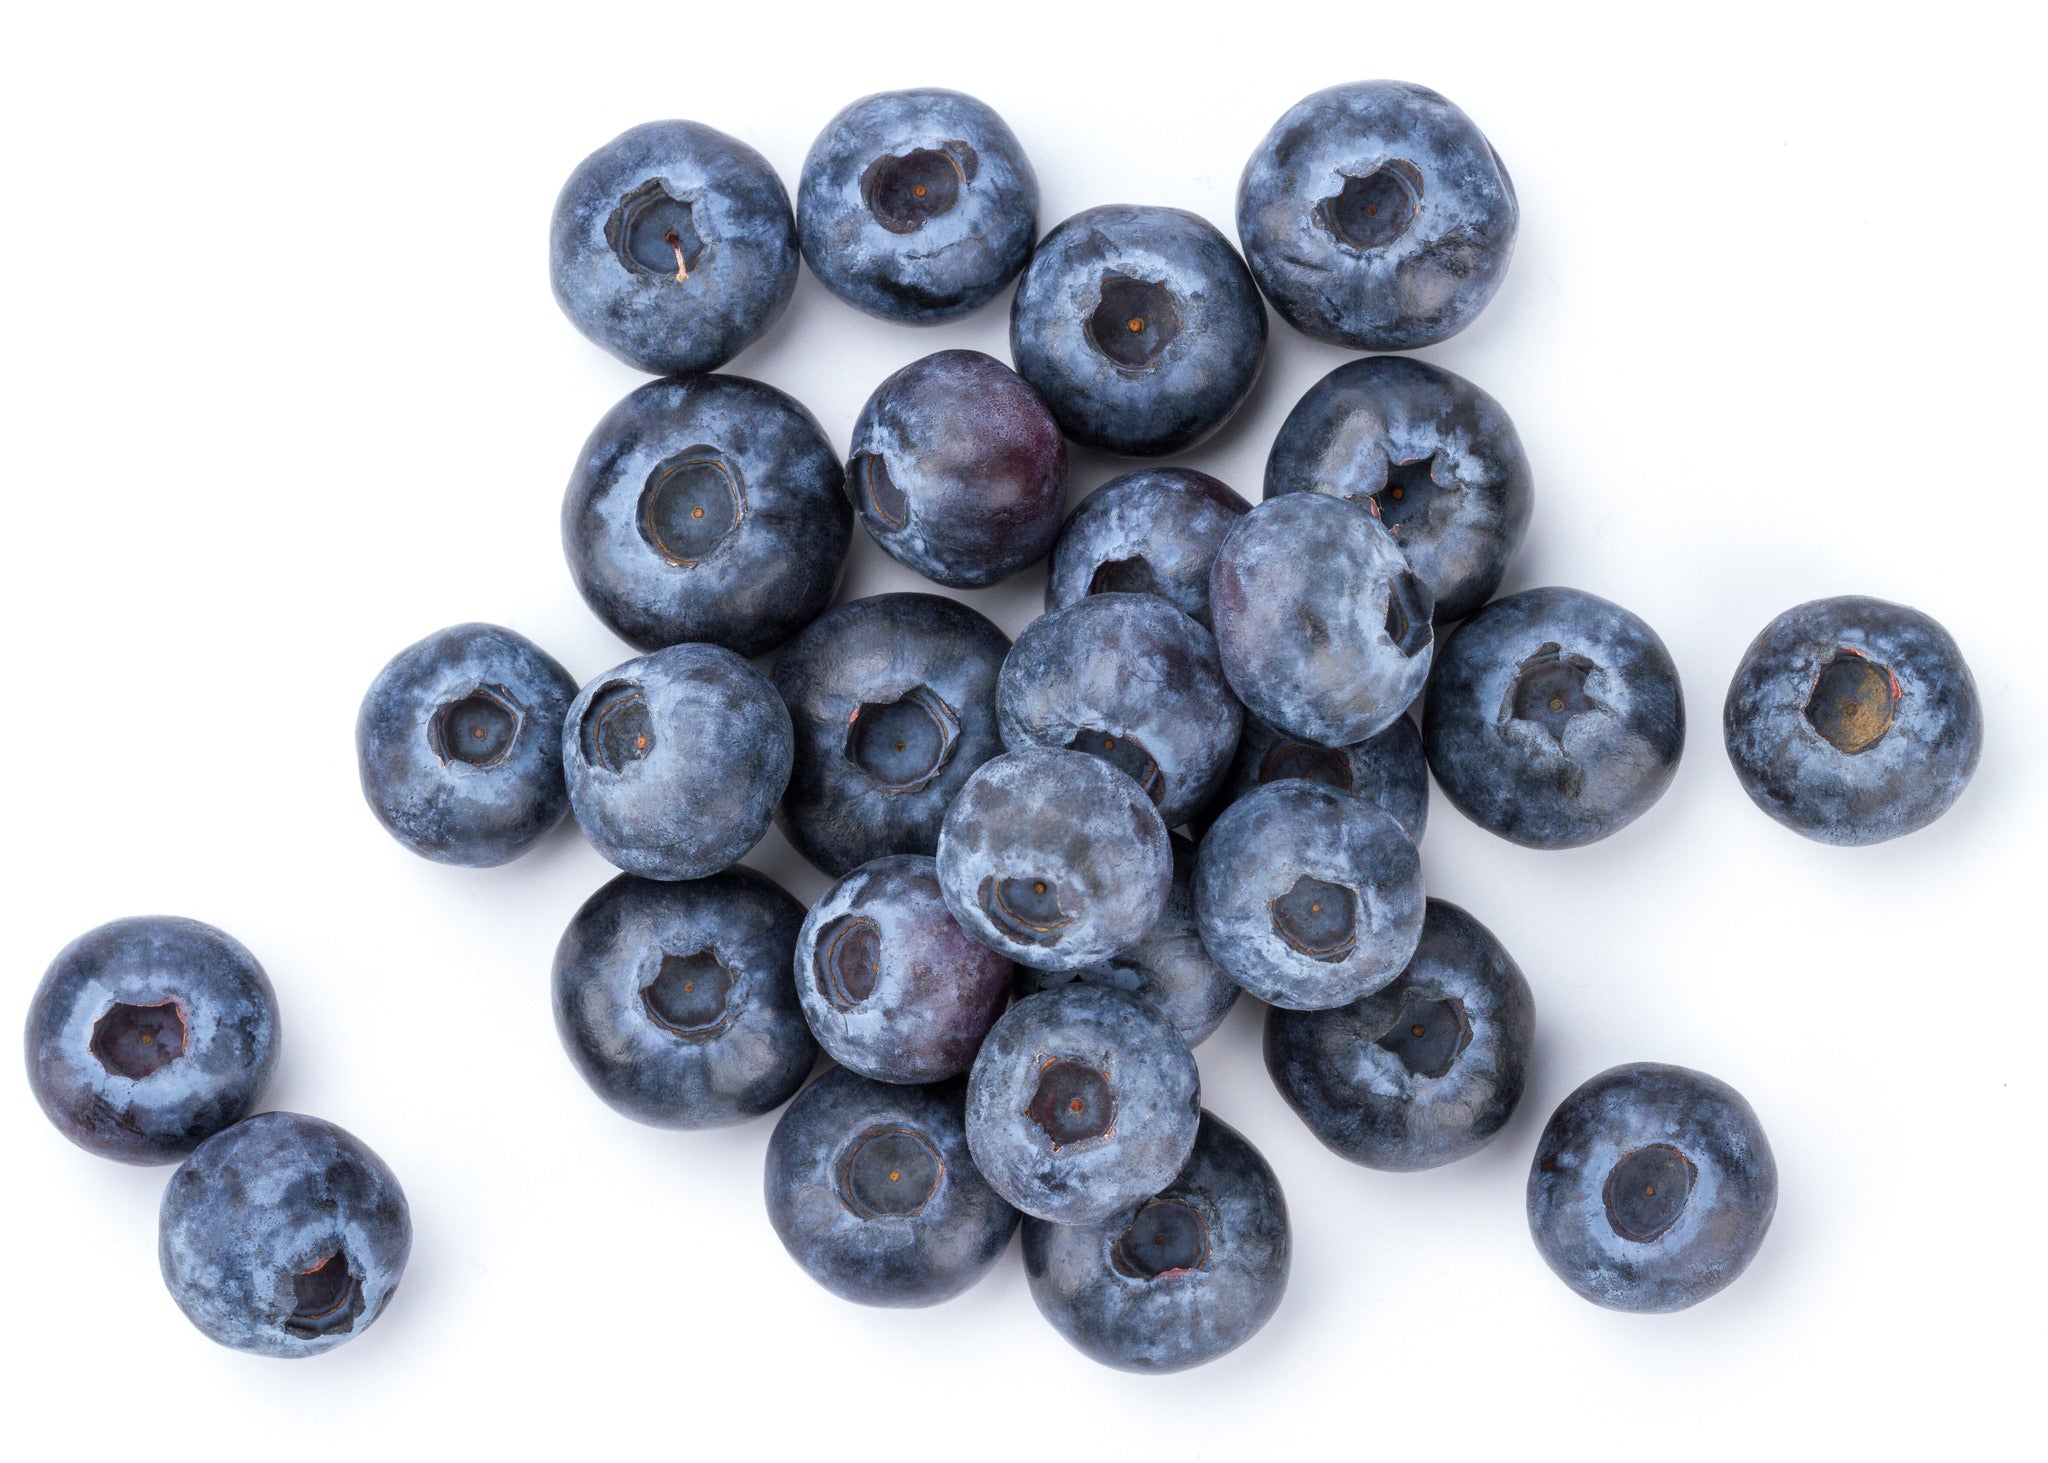 Blueberries, 125g